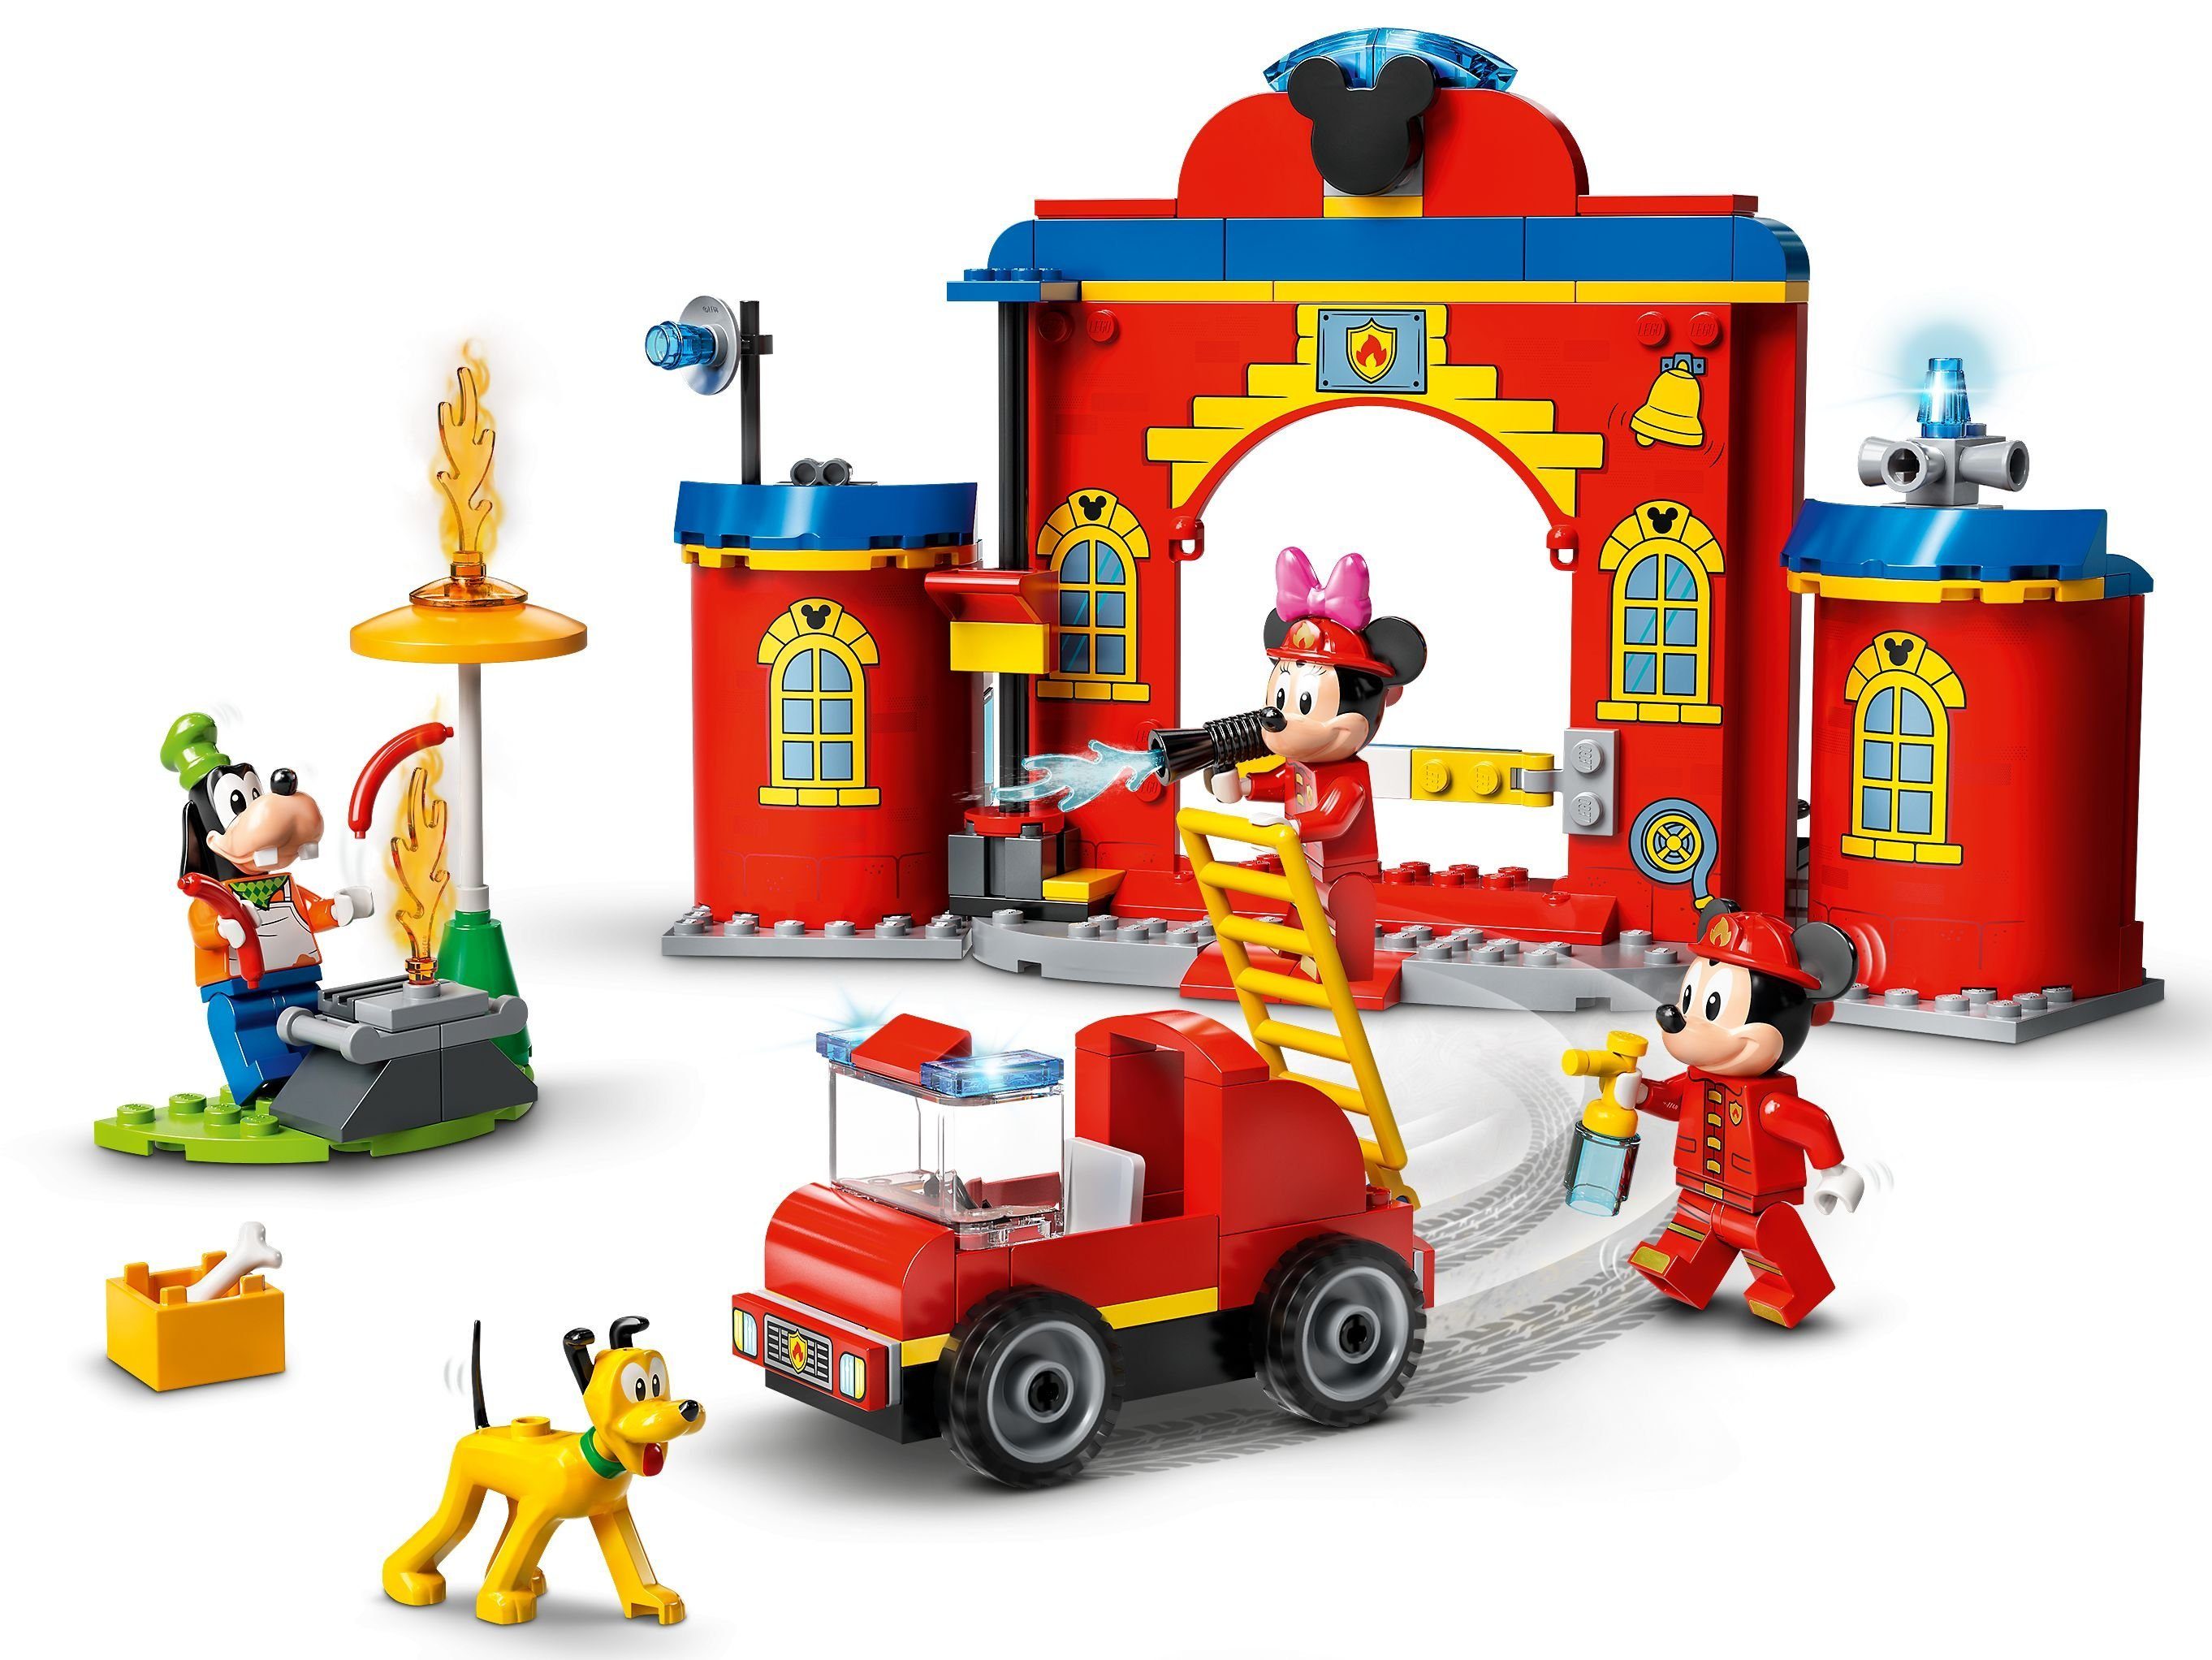 LEGO® Mickys Feuerwehrstation - and (144 LEGO® Disney™ - Mickey St) Friends und, Konstruktionsspielsteine